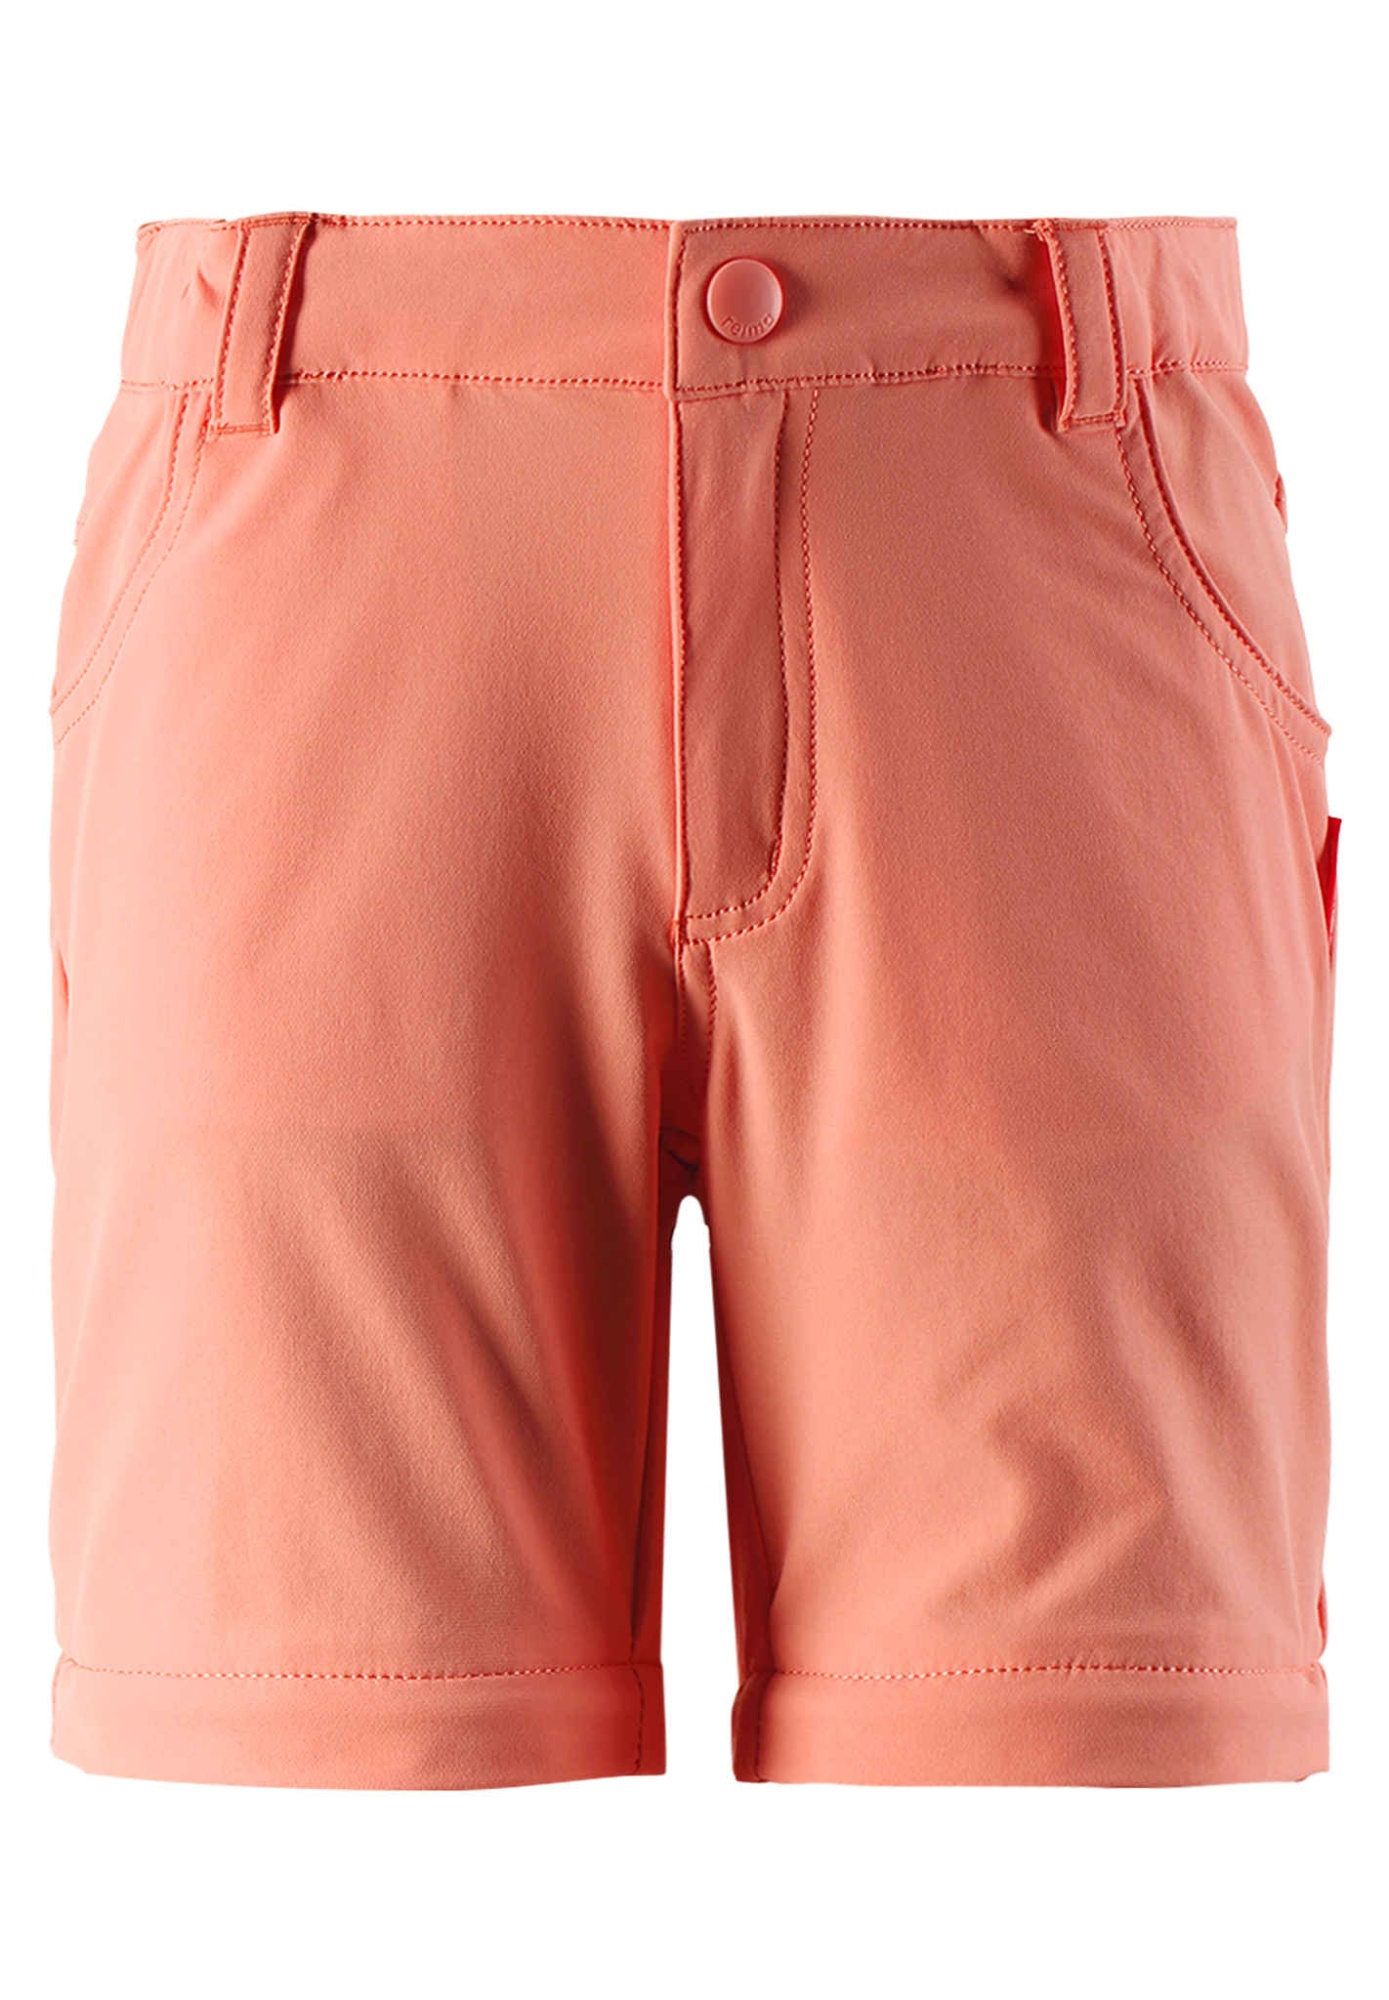 Брюки-шорты Silta Оранжевые | фото